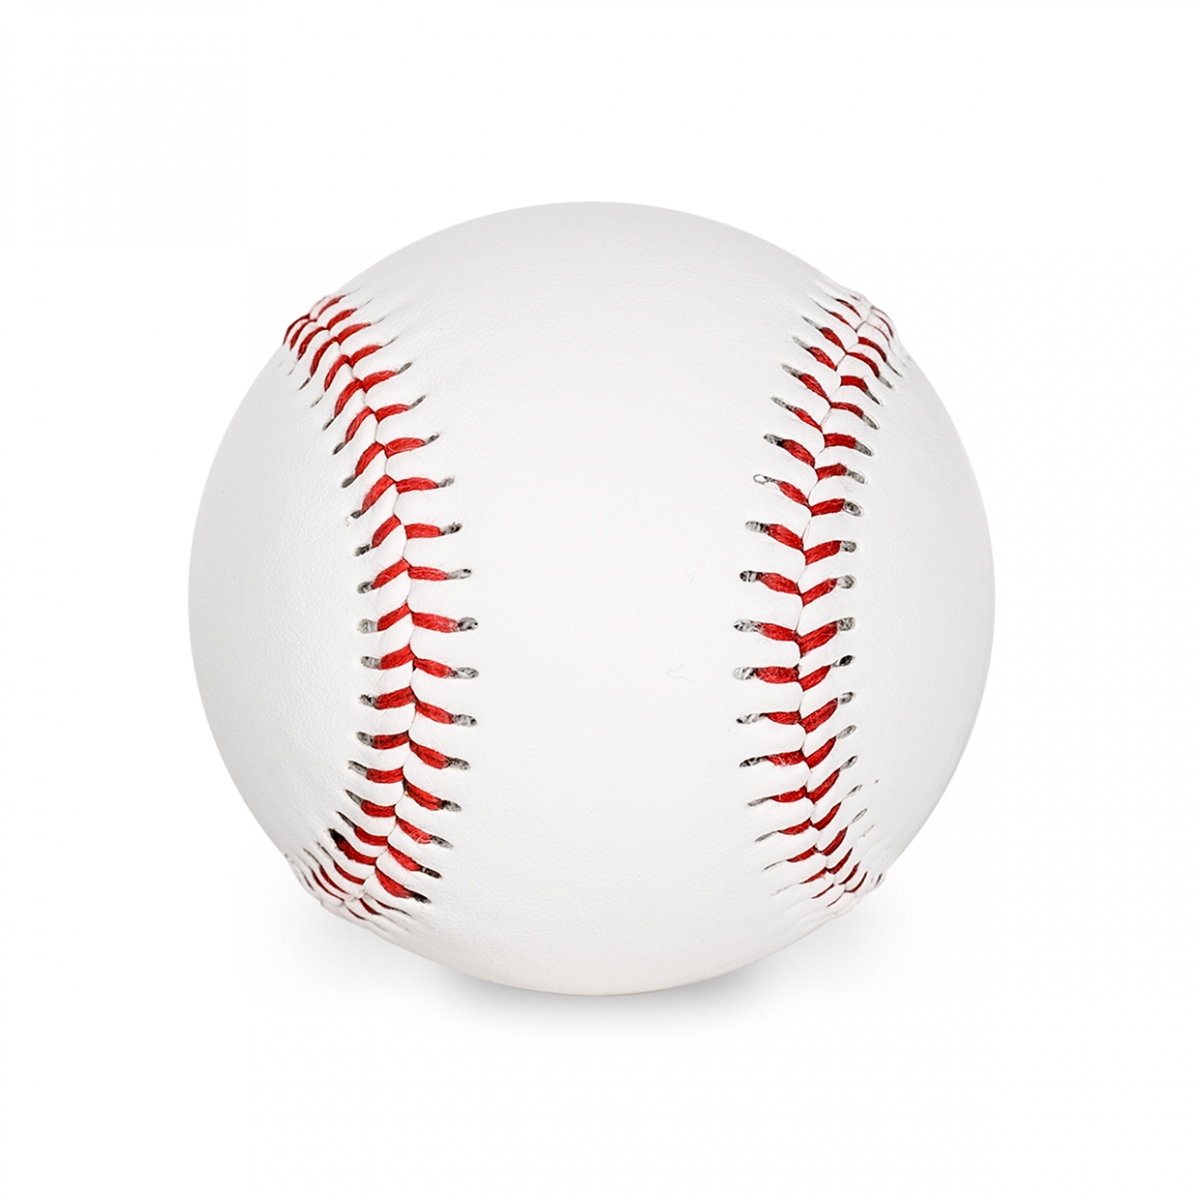 Imagen en la que se ve una pelota de béisbol